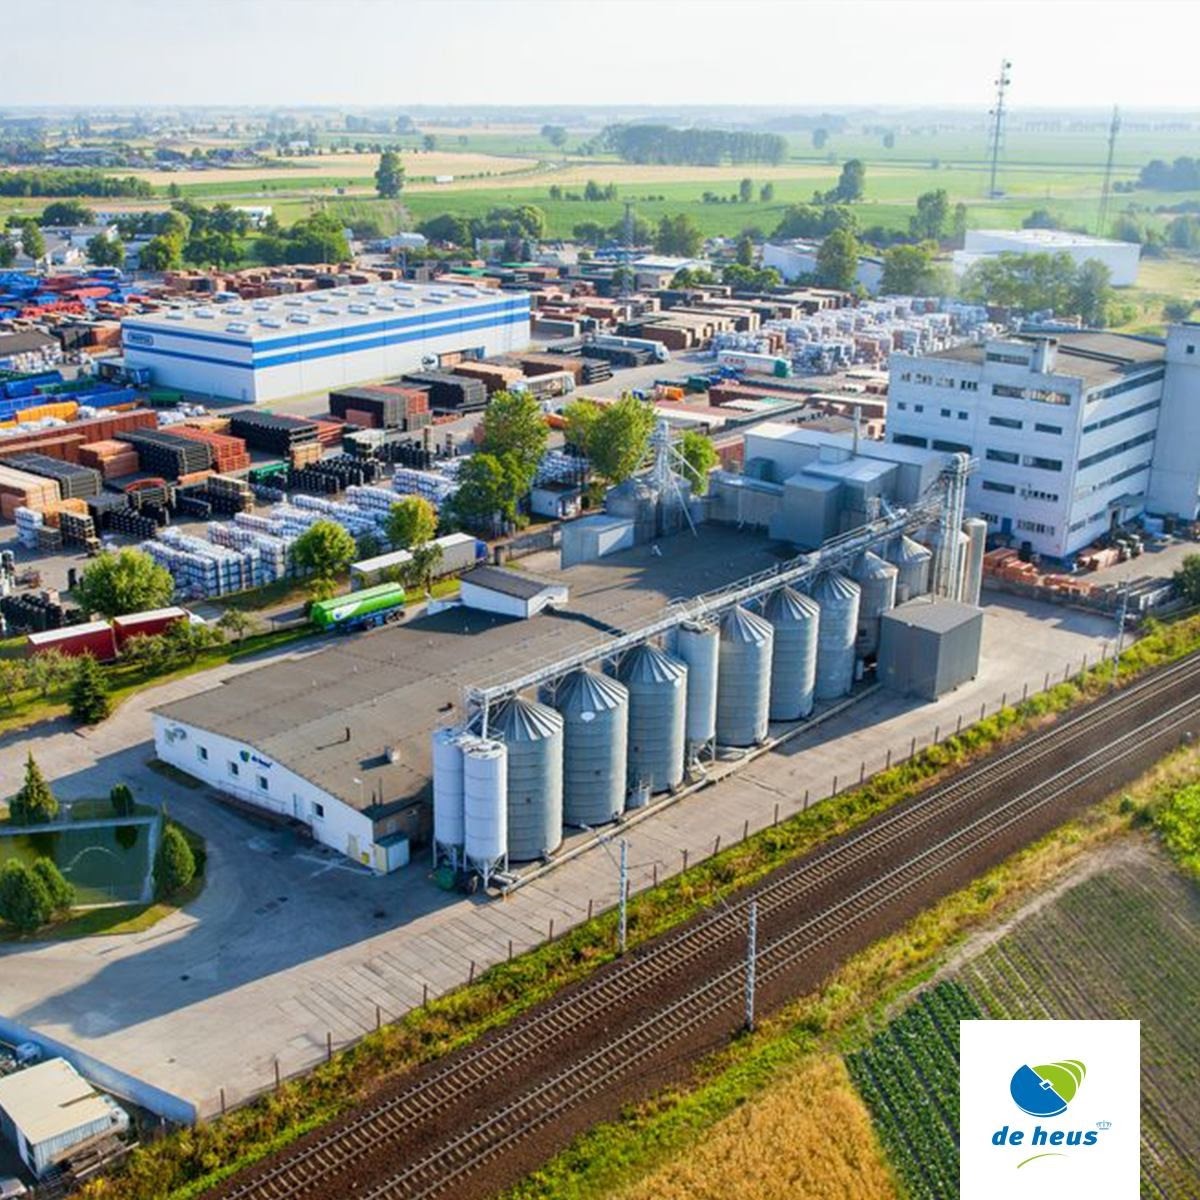 Chân dung Tập đoàn Hoàng gia Hà Lan sở hữu số lượng nhà máy sản xuất thức ăn chăn nuôi nhiều nhất Việt Nam - Ảnh 3.